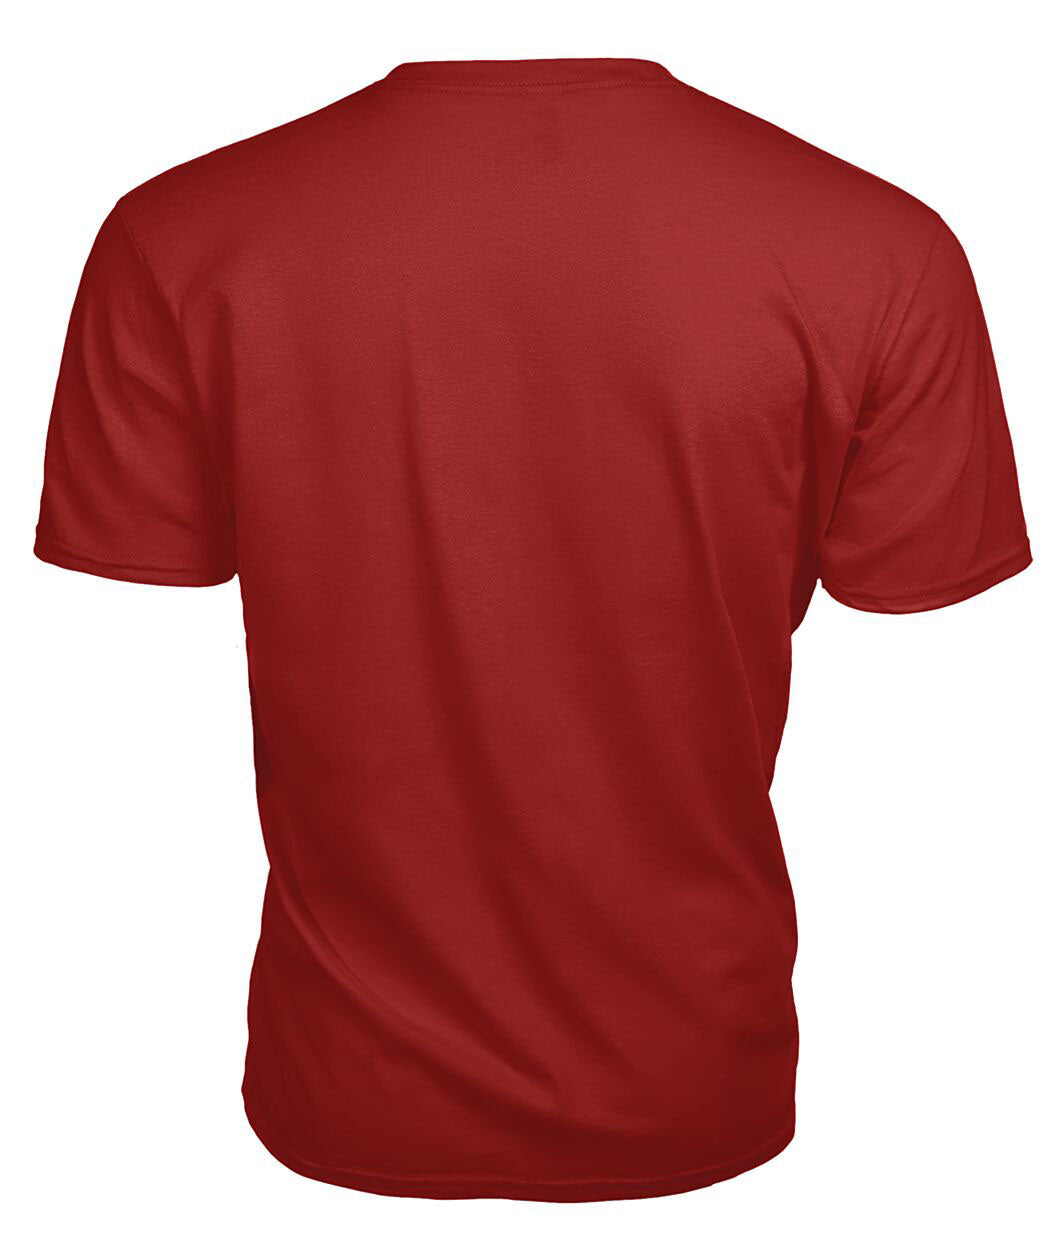 Lamont Ancient Tartan Crest 2D T-shirt - Blood Runs Through My Veins Style